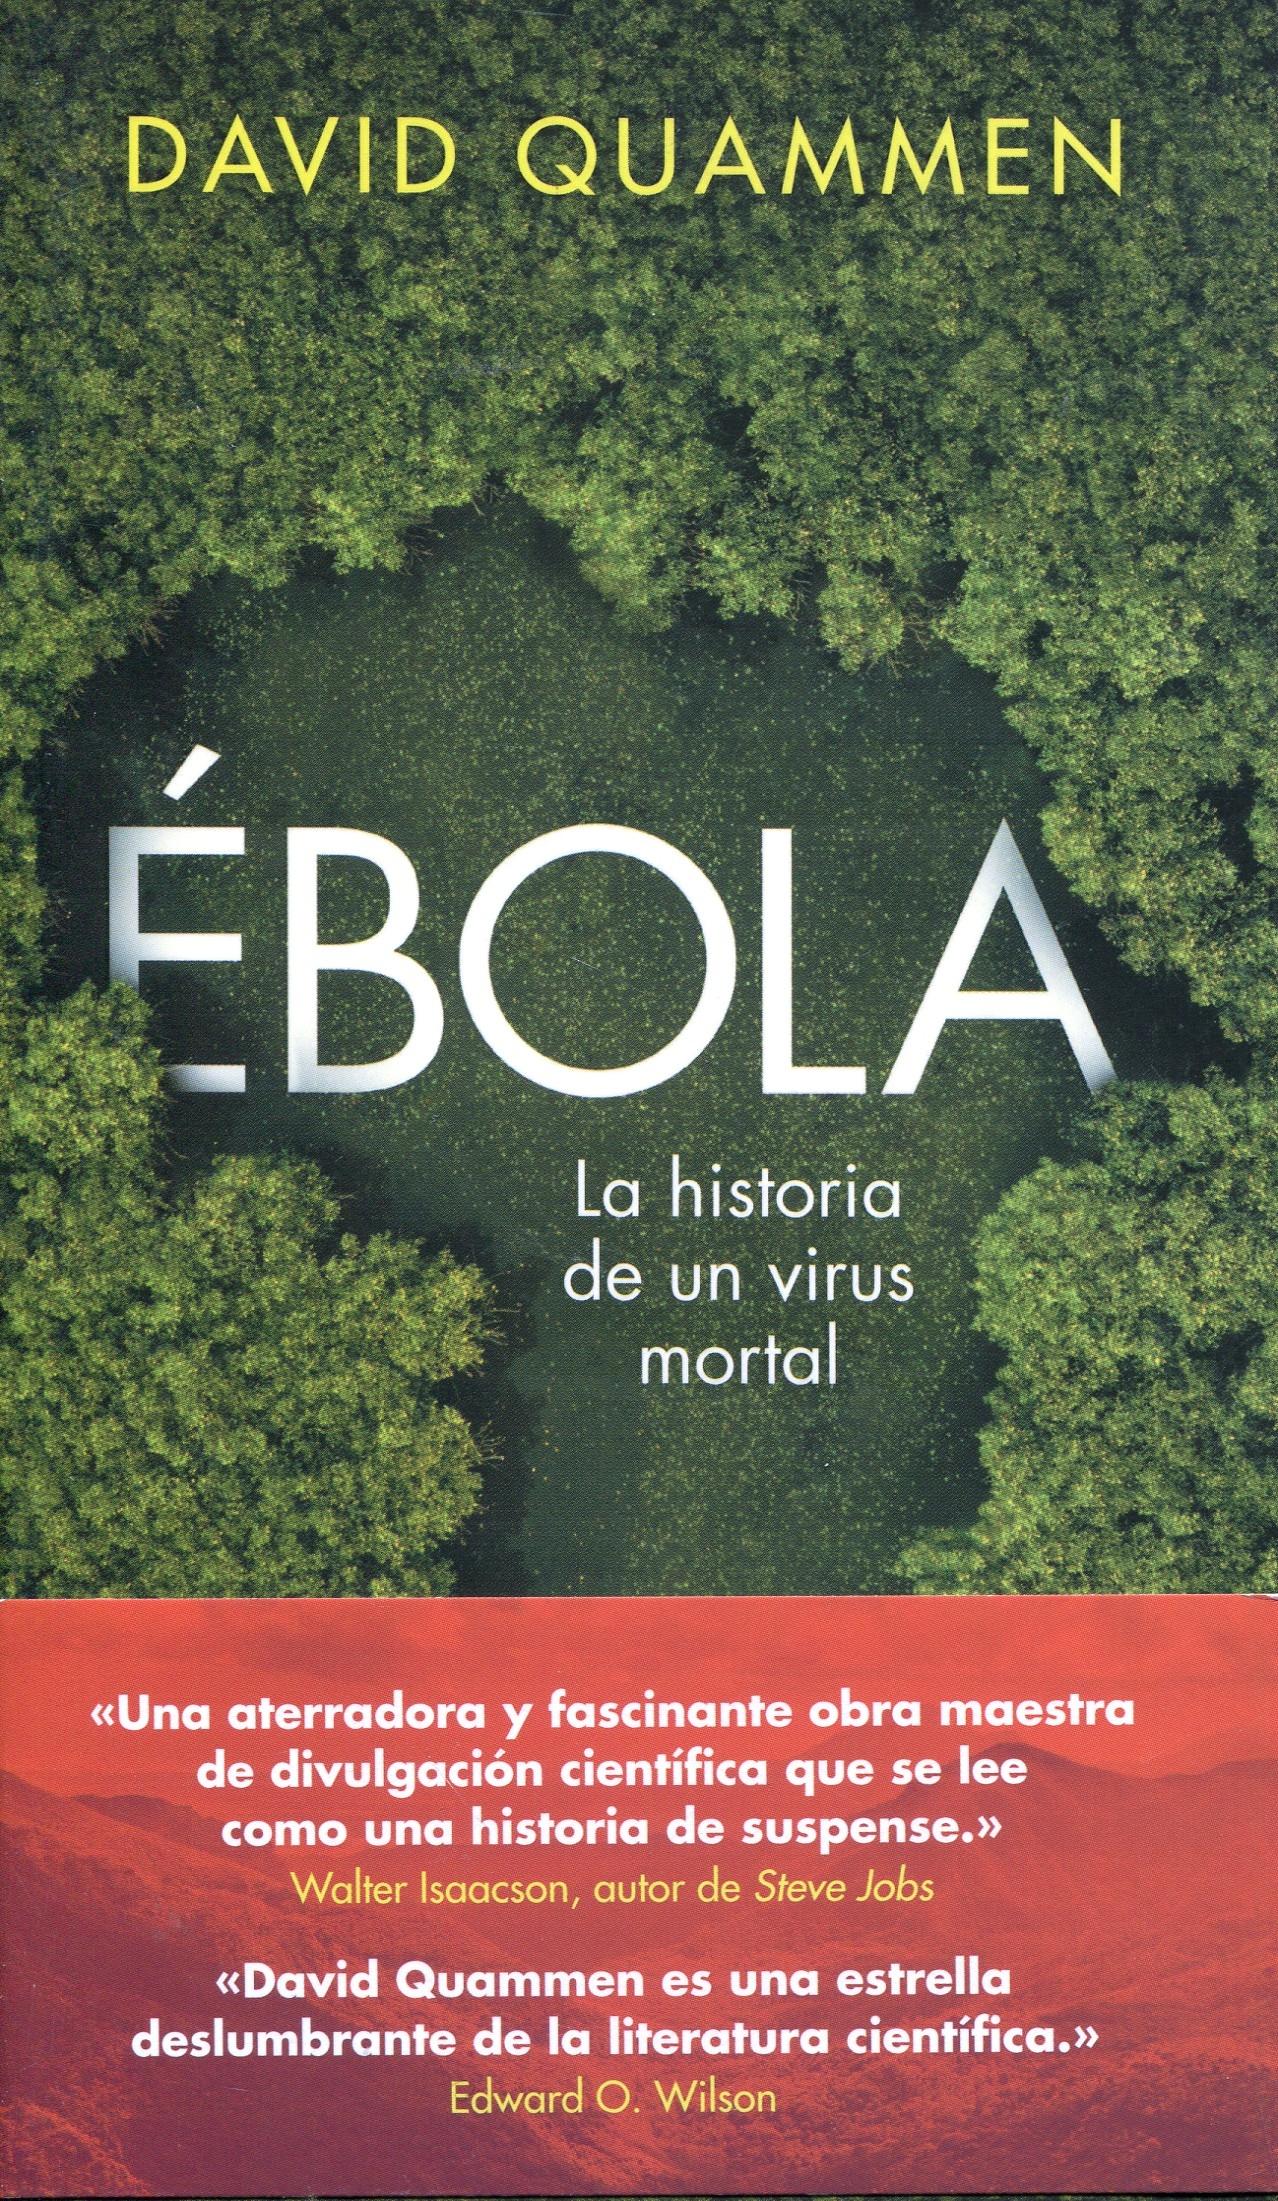 Ébola "La historia de un virus mortal". 